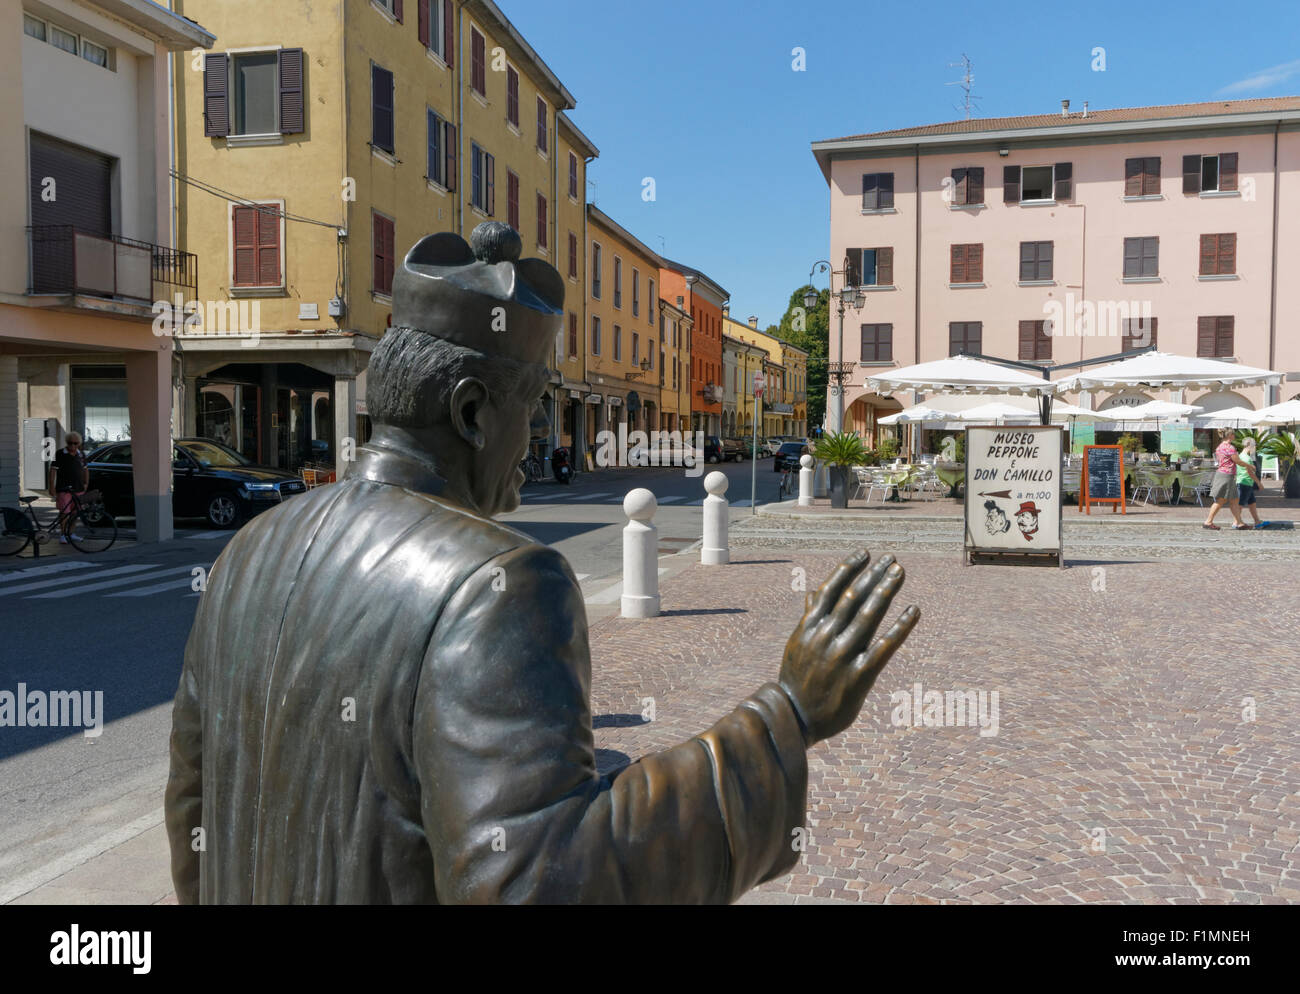 Don Camillo statue in Matteotti square, Brescello (Reggio Emilia) - Emilia Romagna region, Italy Stock Photo